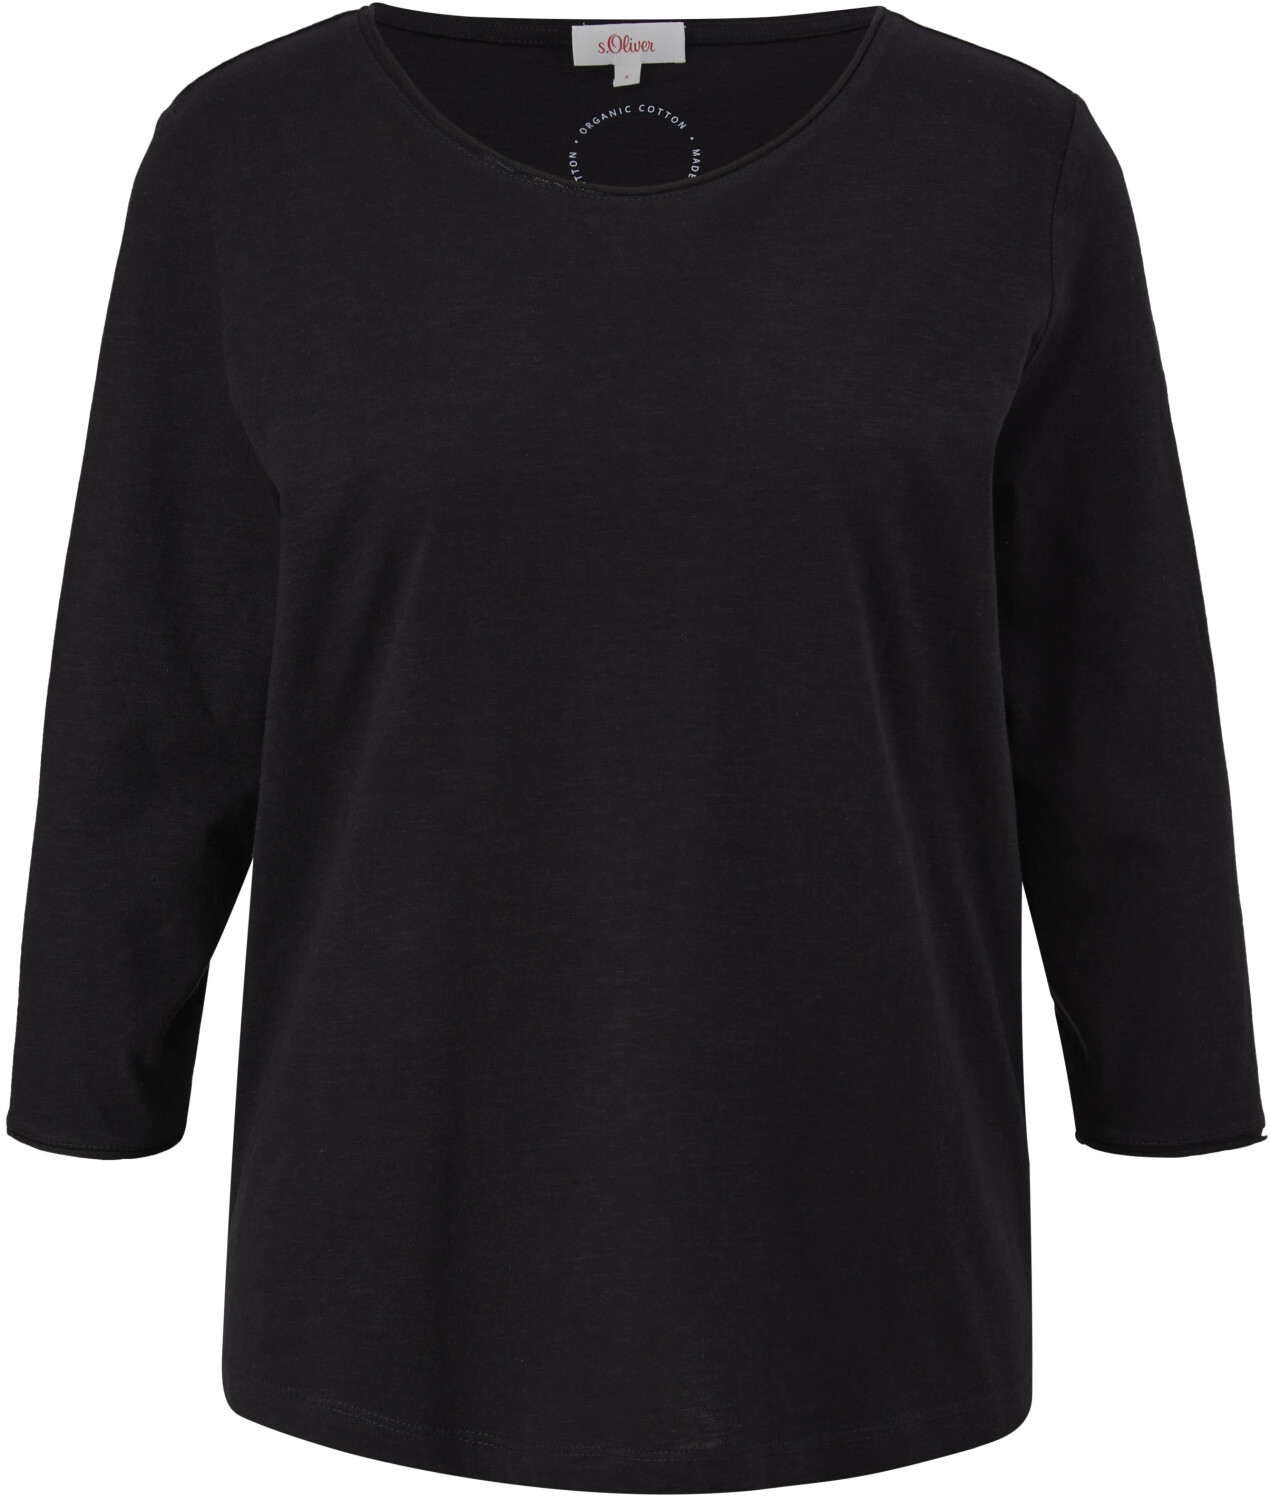 S.Oliver T-Shirt aus Baumwolle (2112026.9999) schwarz ab 9,99 € |  Preisvergleich bei